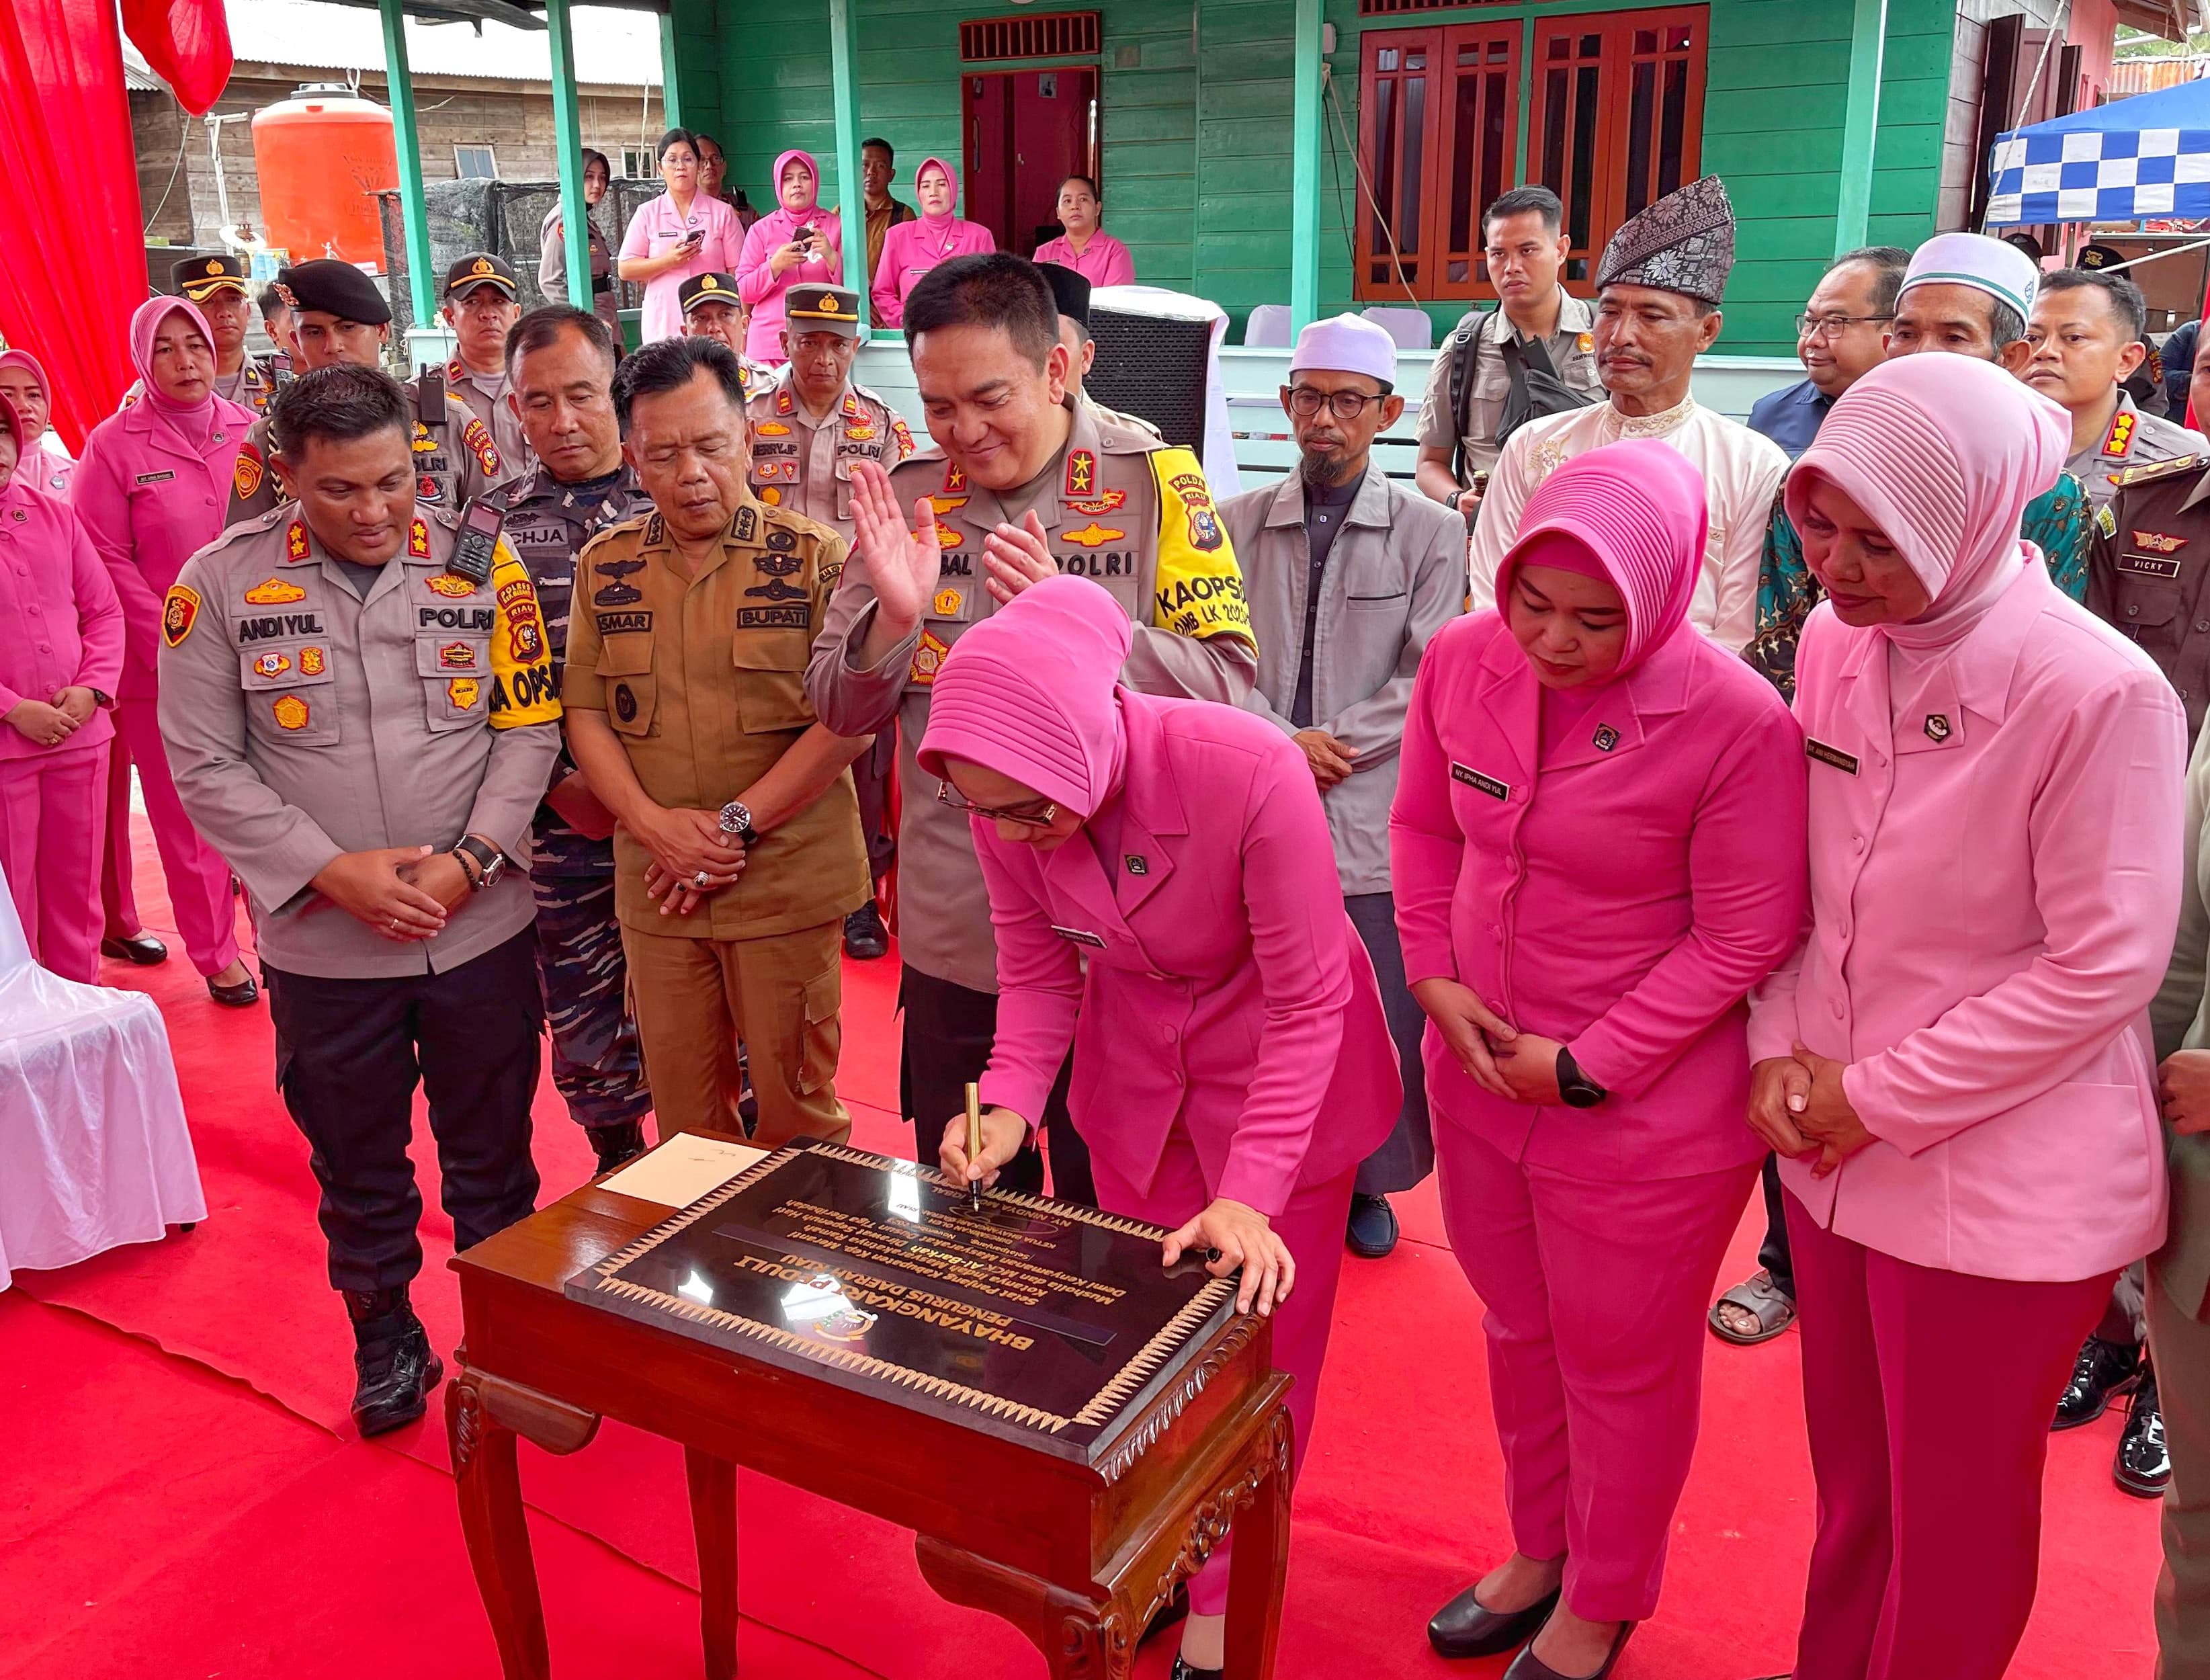 Ketua Bhayangkari Daerah Riau Nindya didampingi Kapolda Riau menandatangani prasasti peresmian Mushalla Al Barkah di Kepulauan Meranti